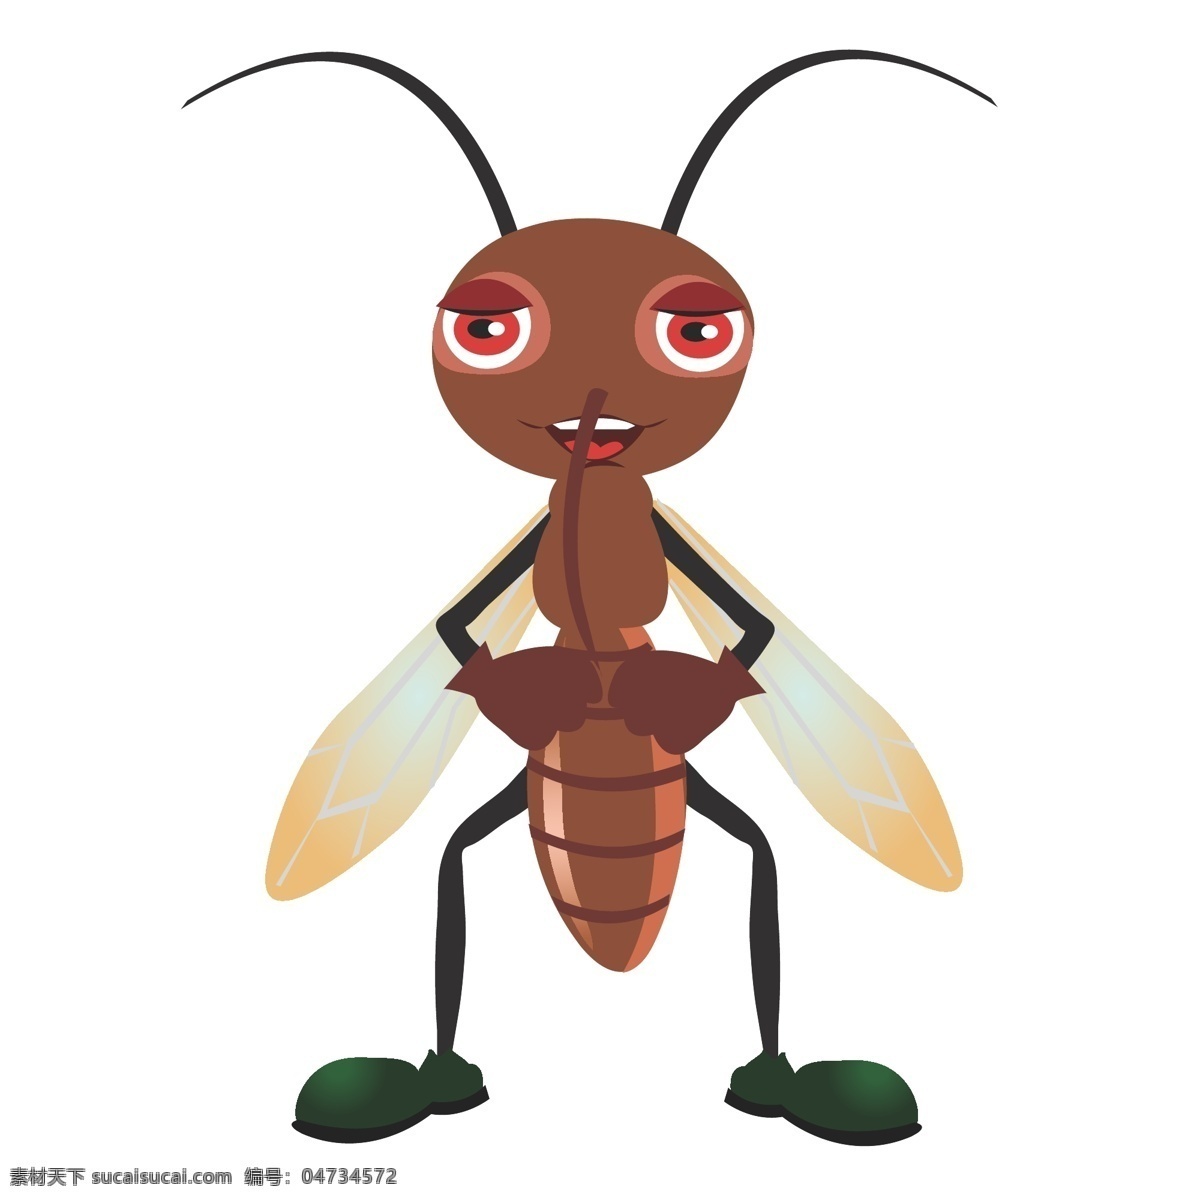 印花 矢量图 动物 服装图案 昆虫 蜜蜂 色彩 印花矢量图 面料图库 服装设计 图案花型